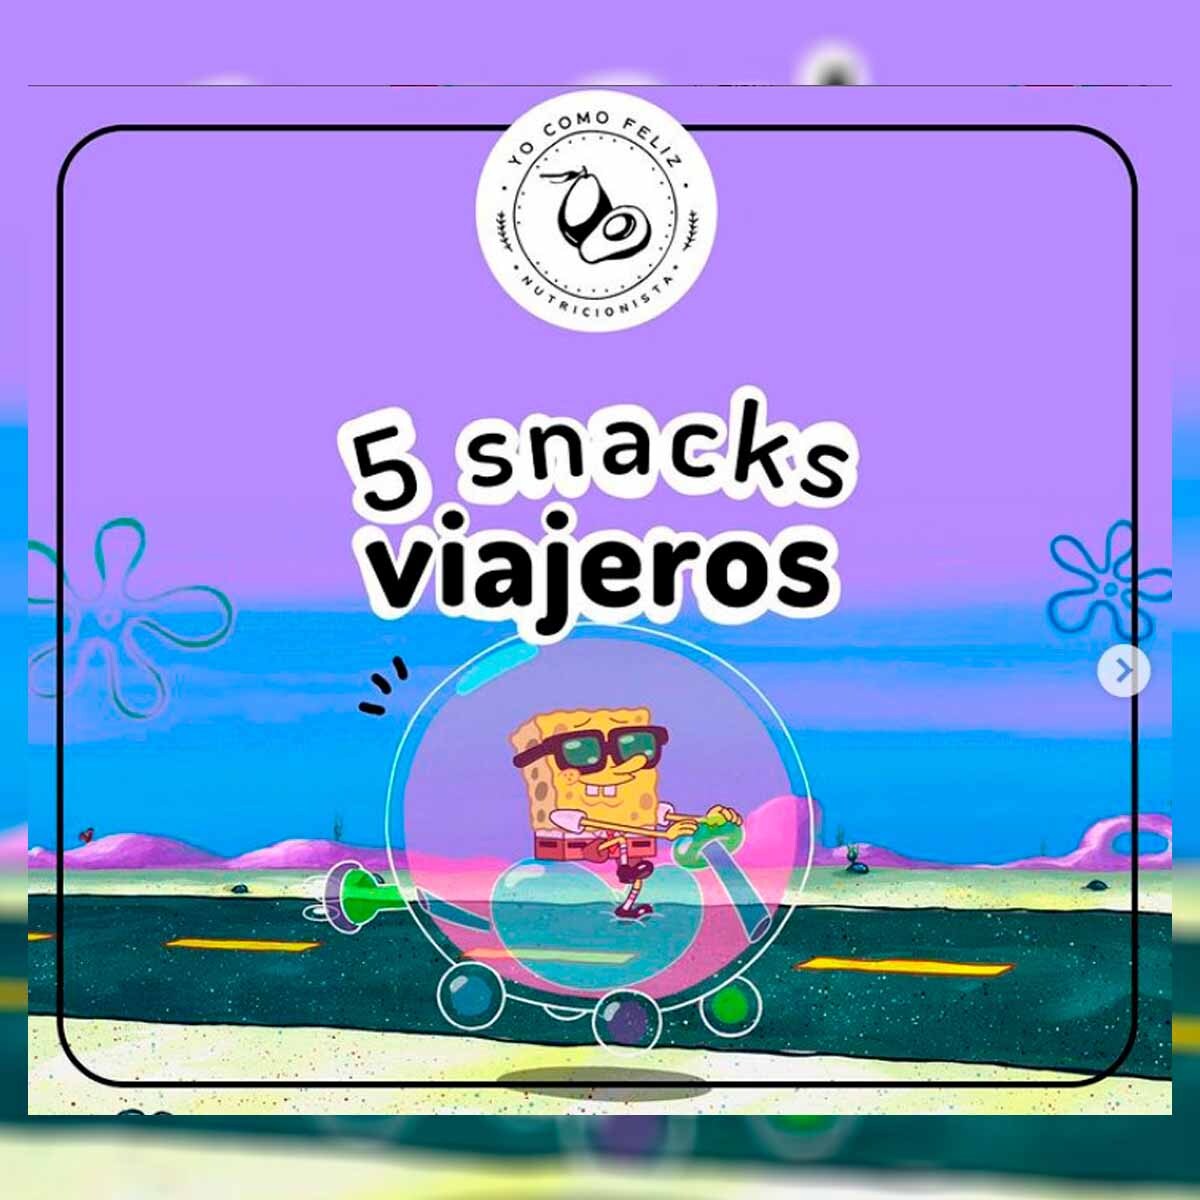 5 snacks